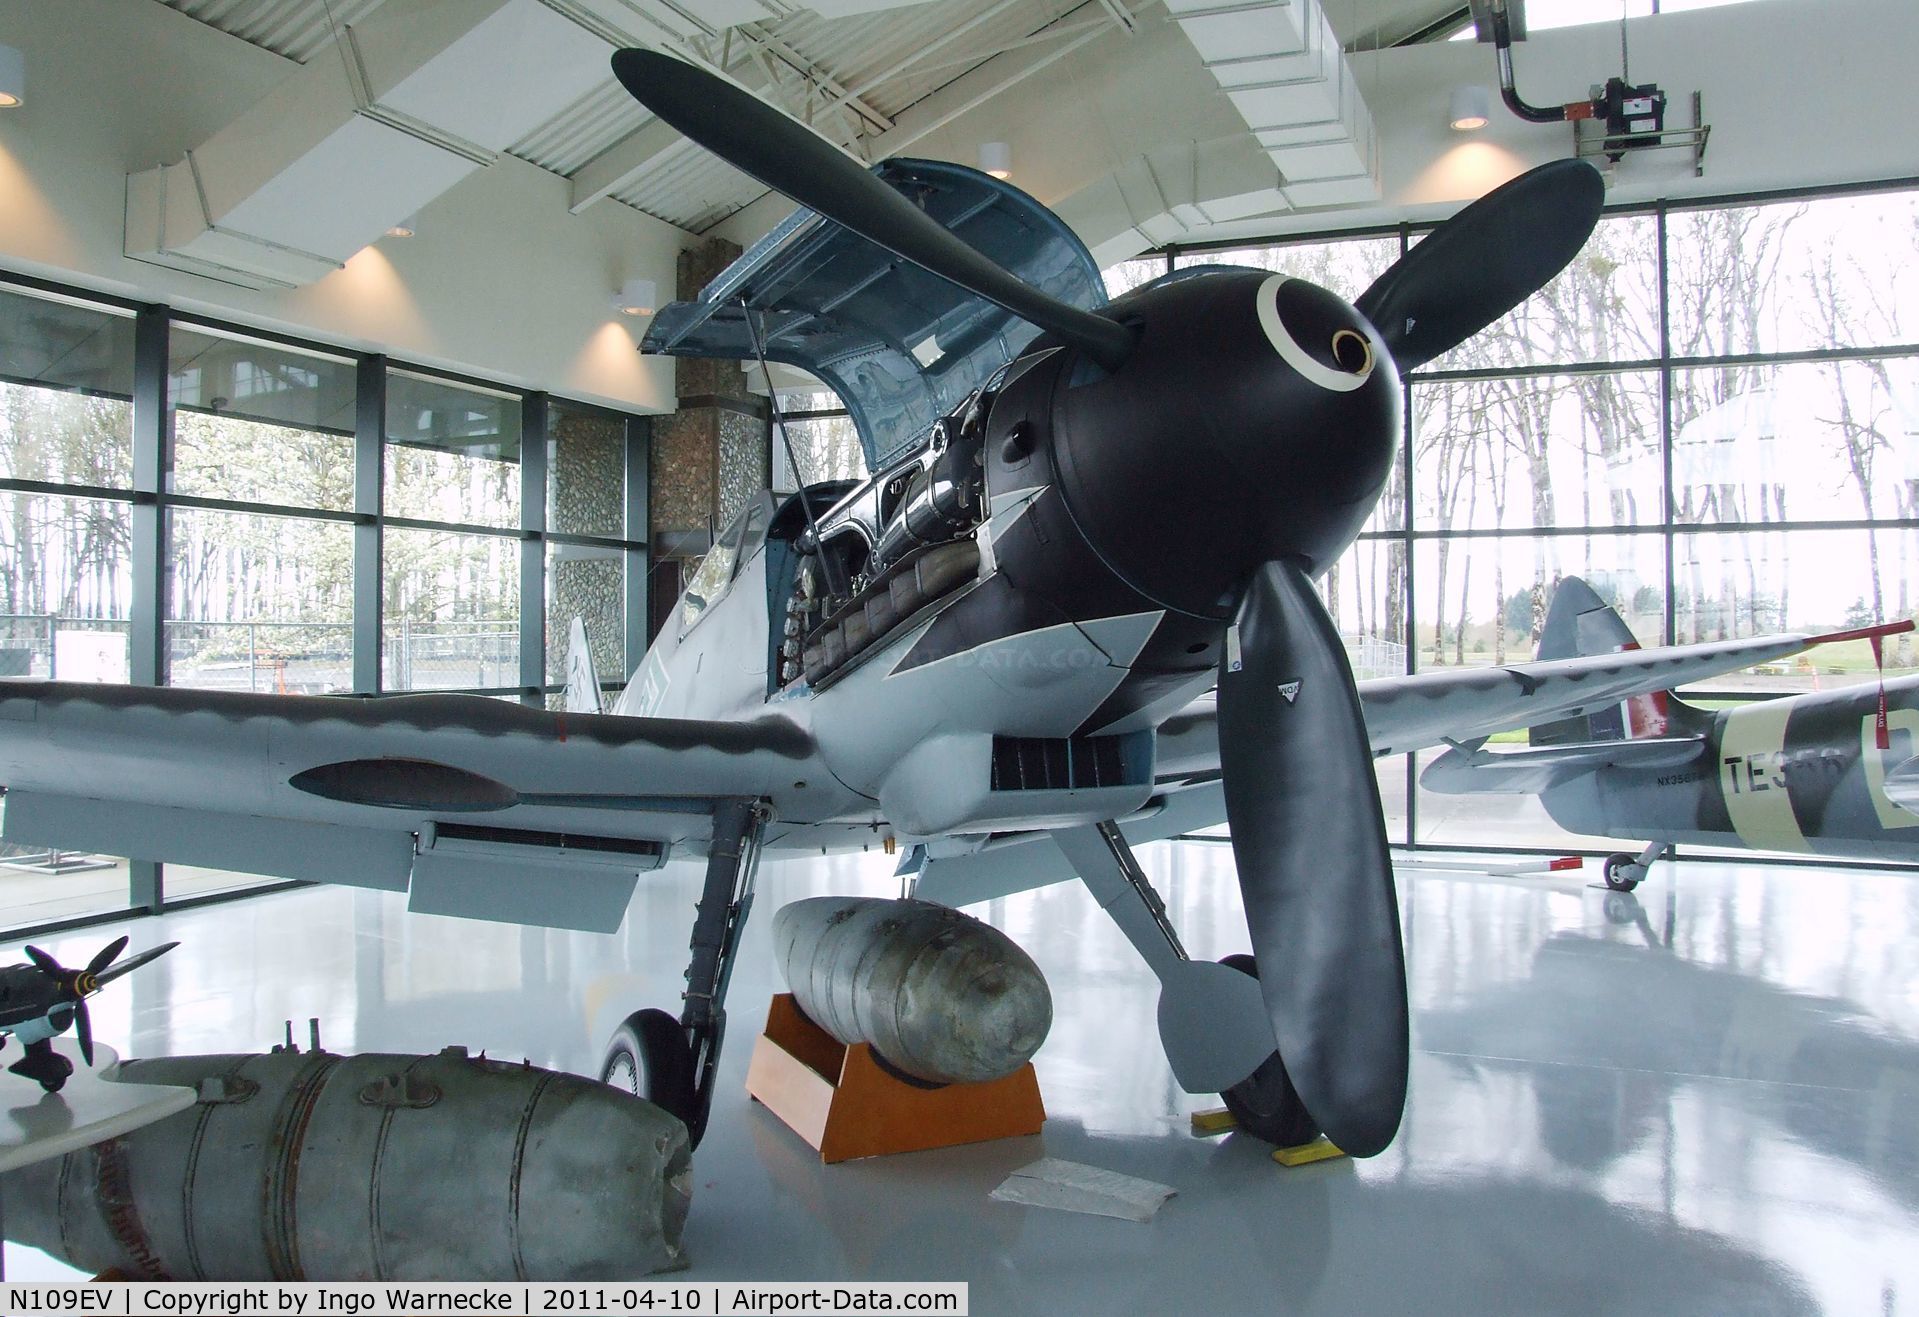 N109EV, Messerschmitt Bf-109G C/N 610937, Messerschmitt Bf 109G at the Evergreen Aviation & Space Museum, McMinnville OR